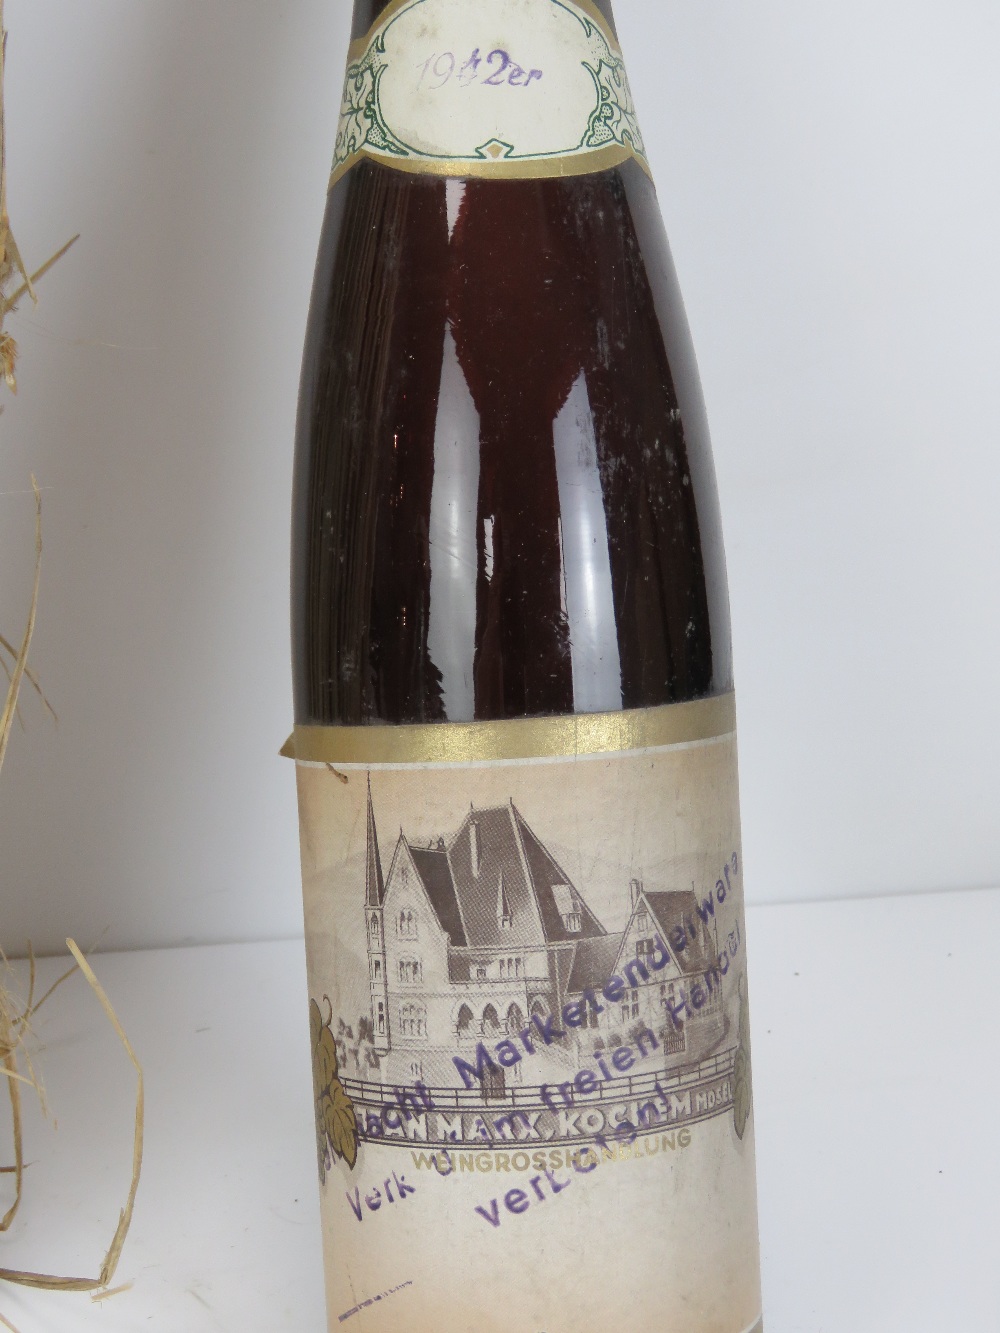 Three WWII German bottles, found in Fren - Image 3 of 3